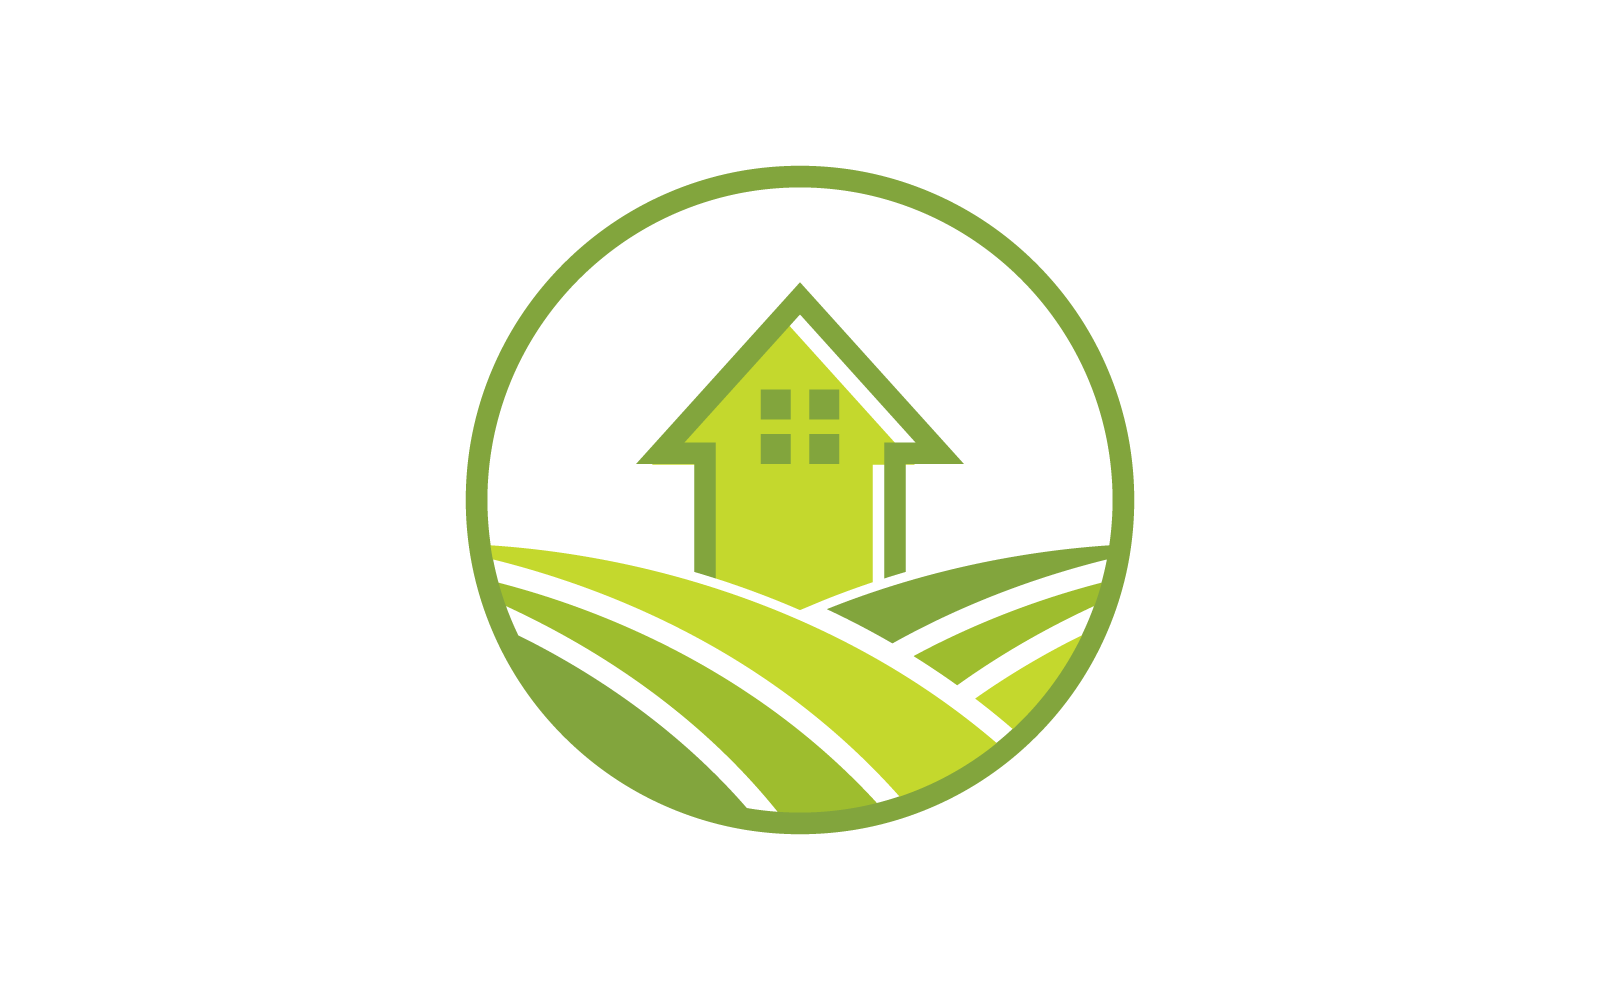 Vorlage für flaches Design mit Bauernhof-Logo-Vektor